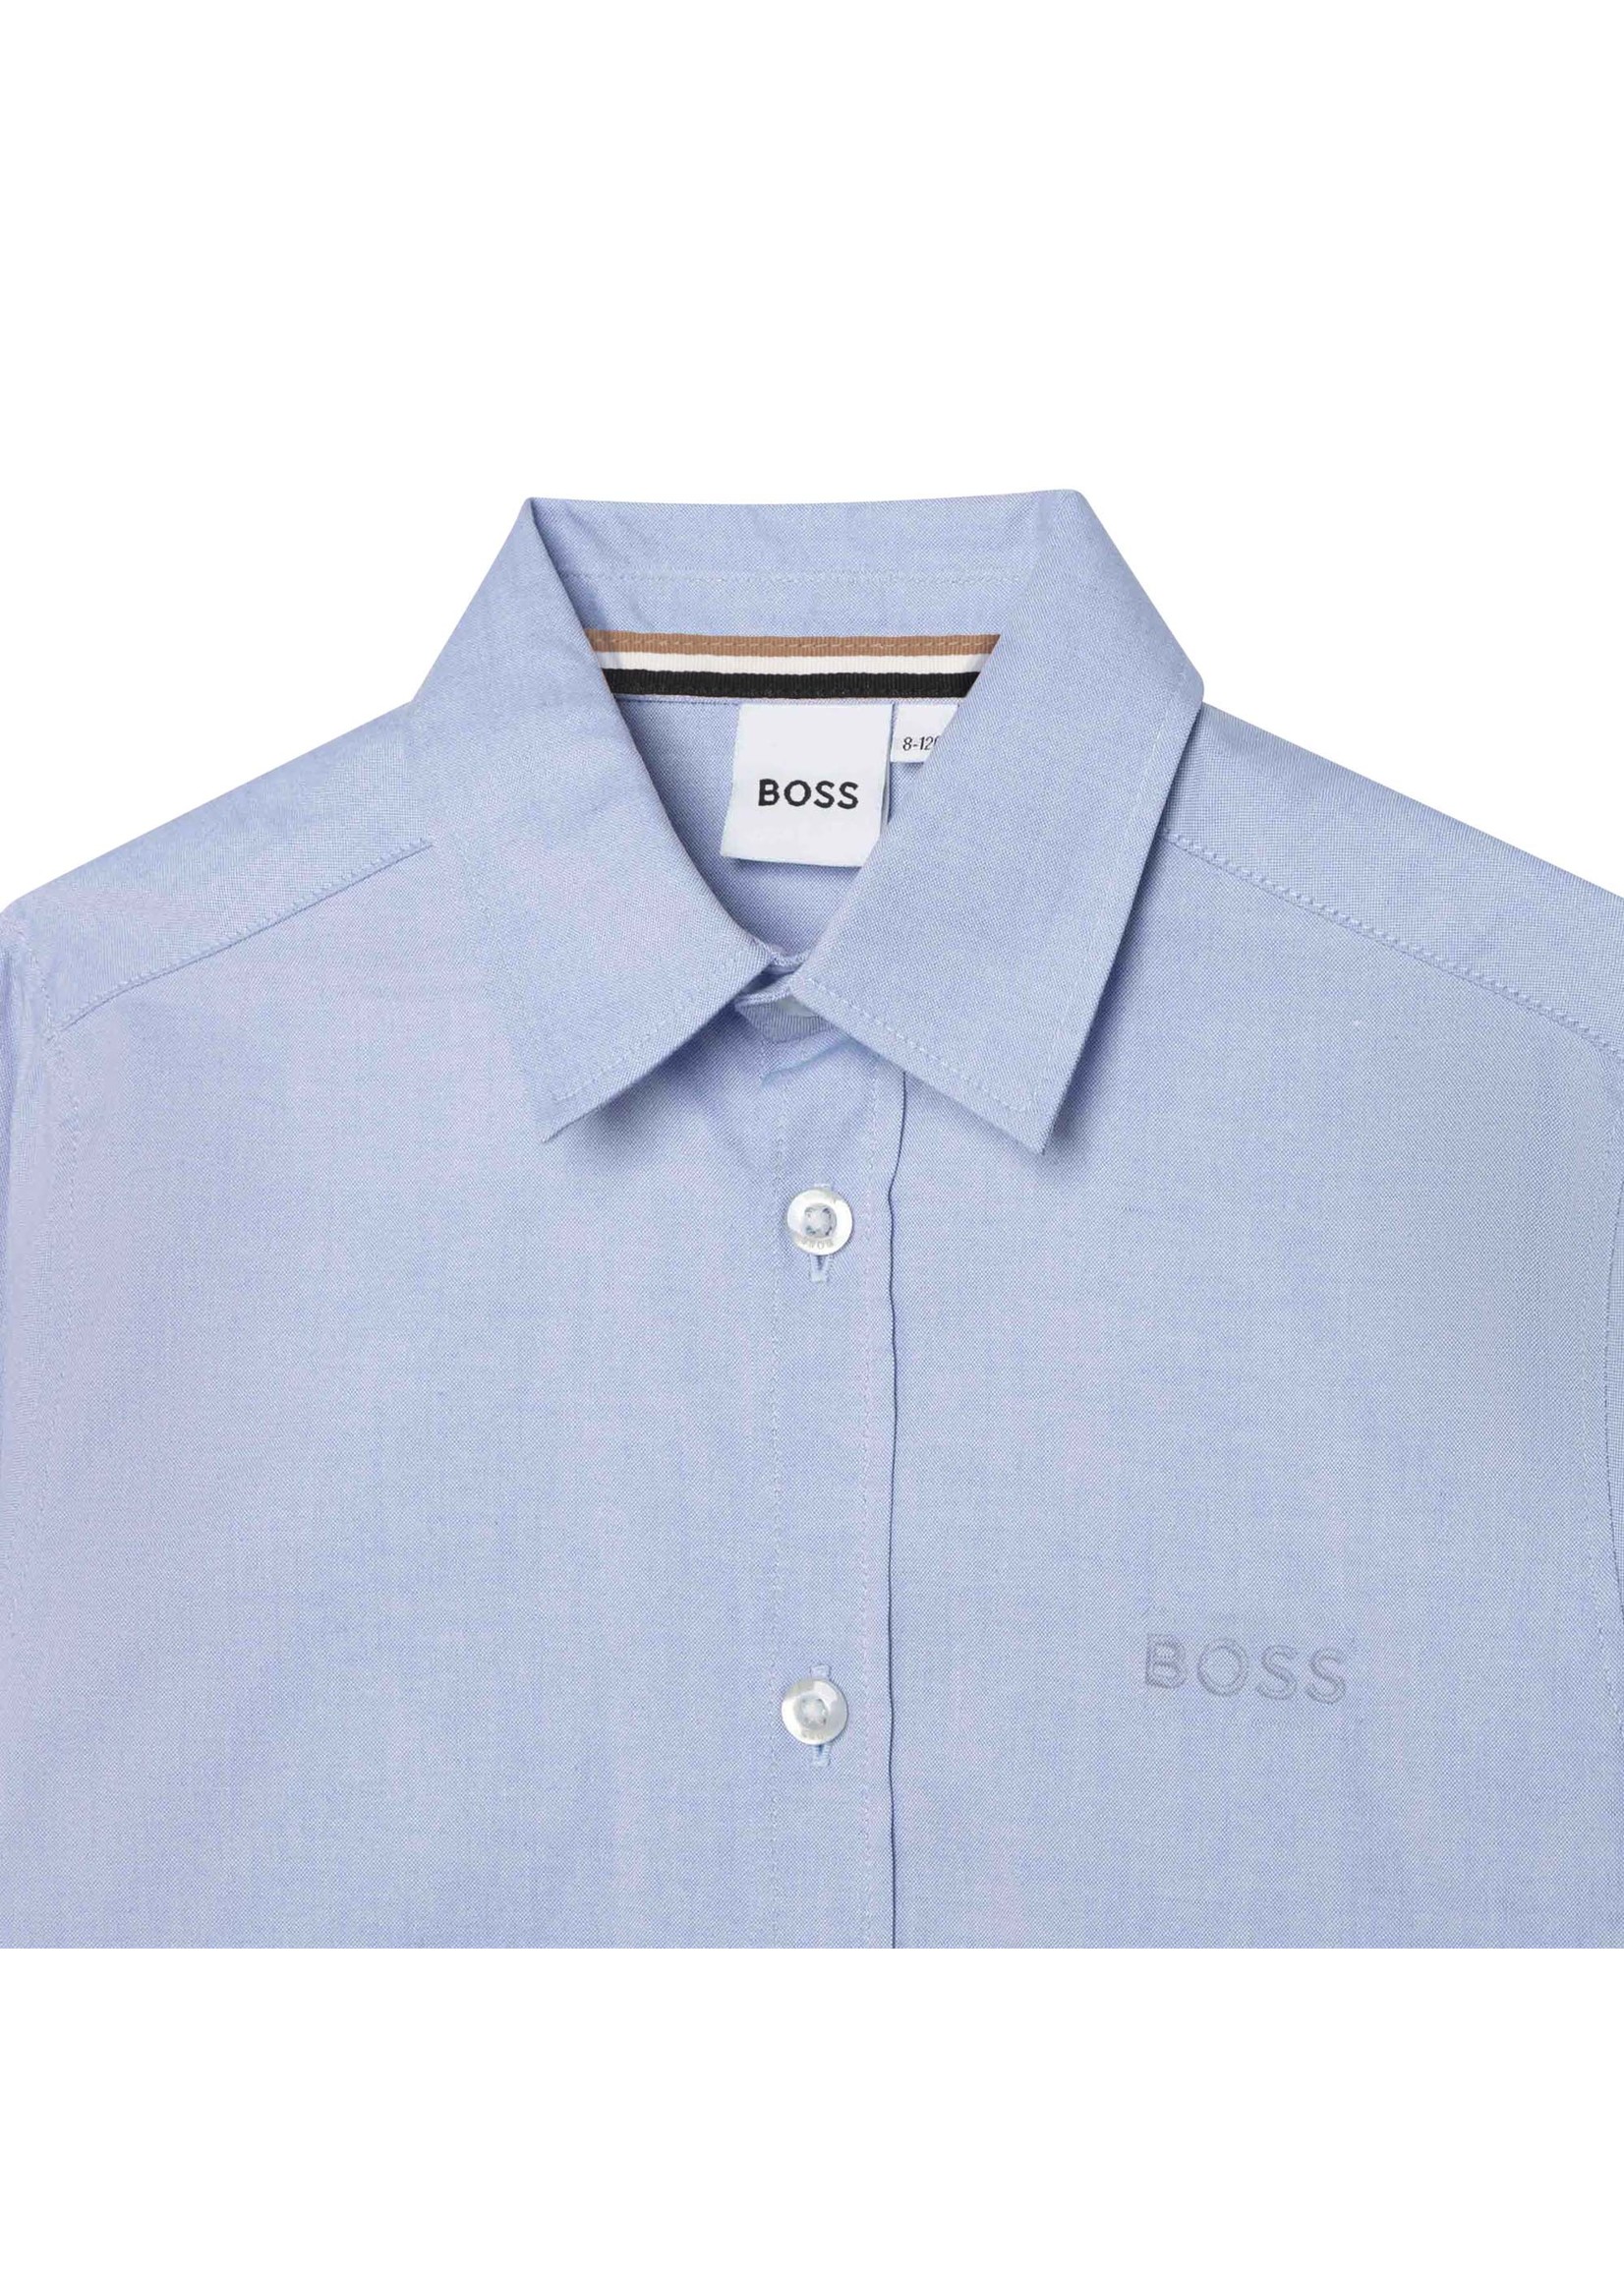 BOSS BOSS Boy shirt faded blue - J25M38